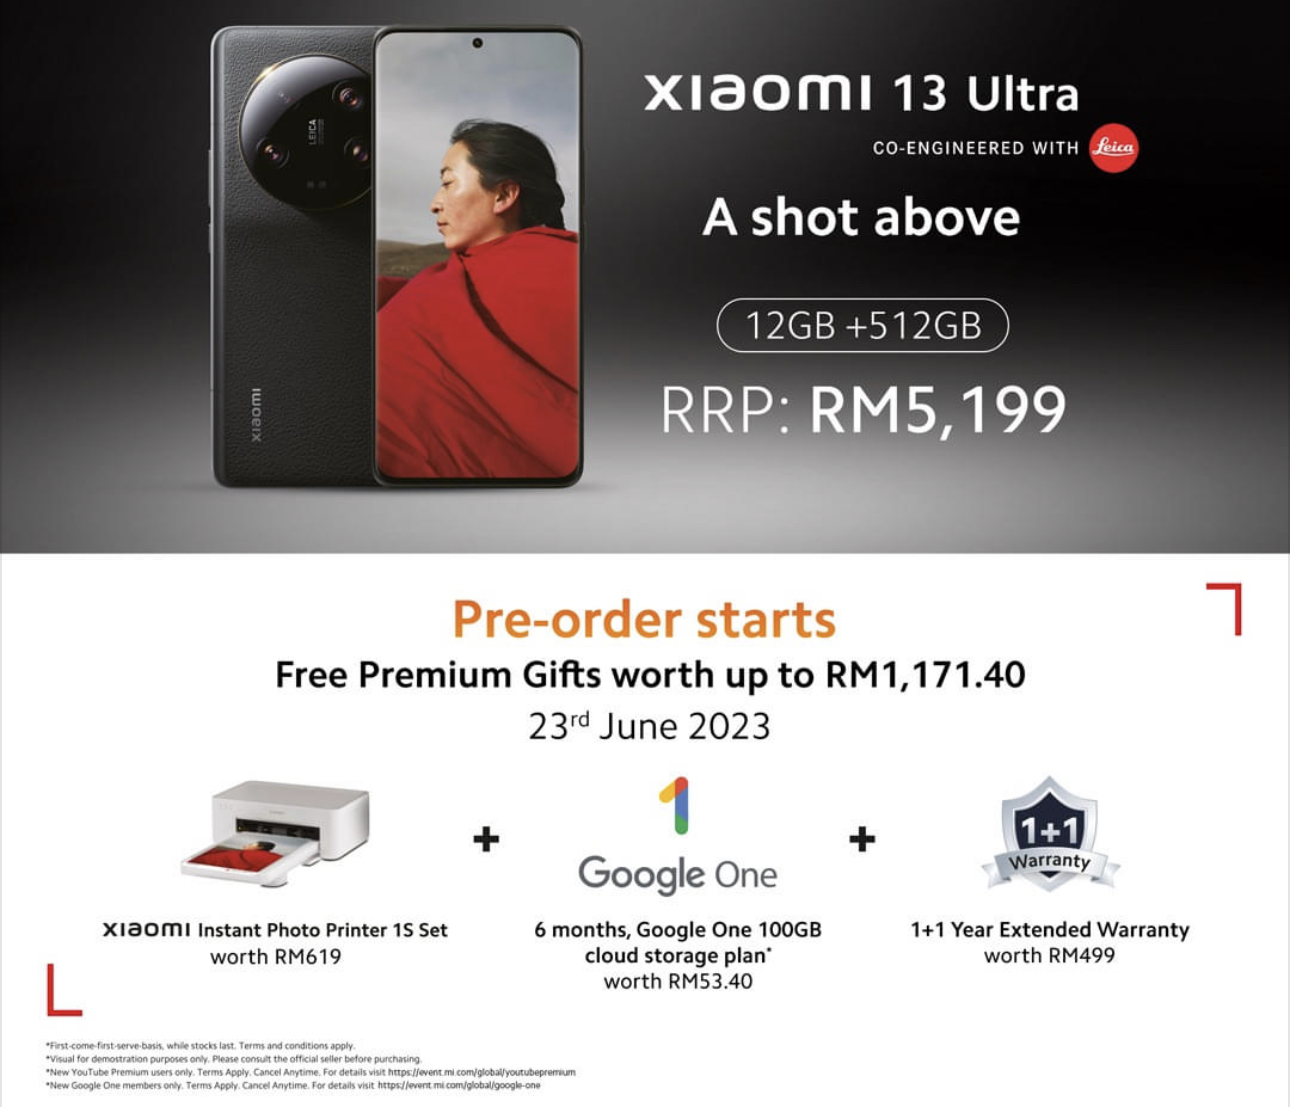 Xiaomi 13 Ultra kini rasmi di Malaysia pada harga RM 5,199 15